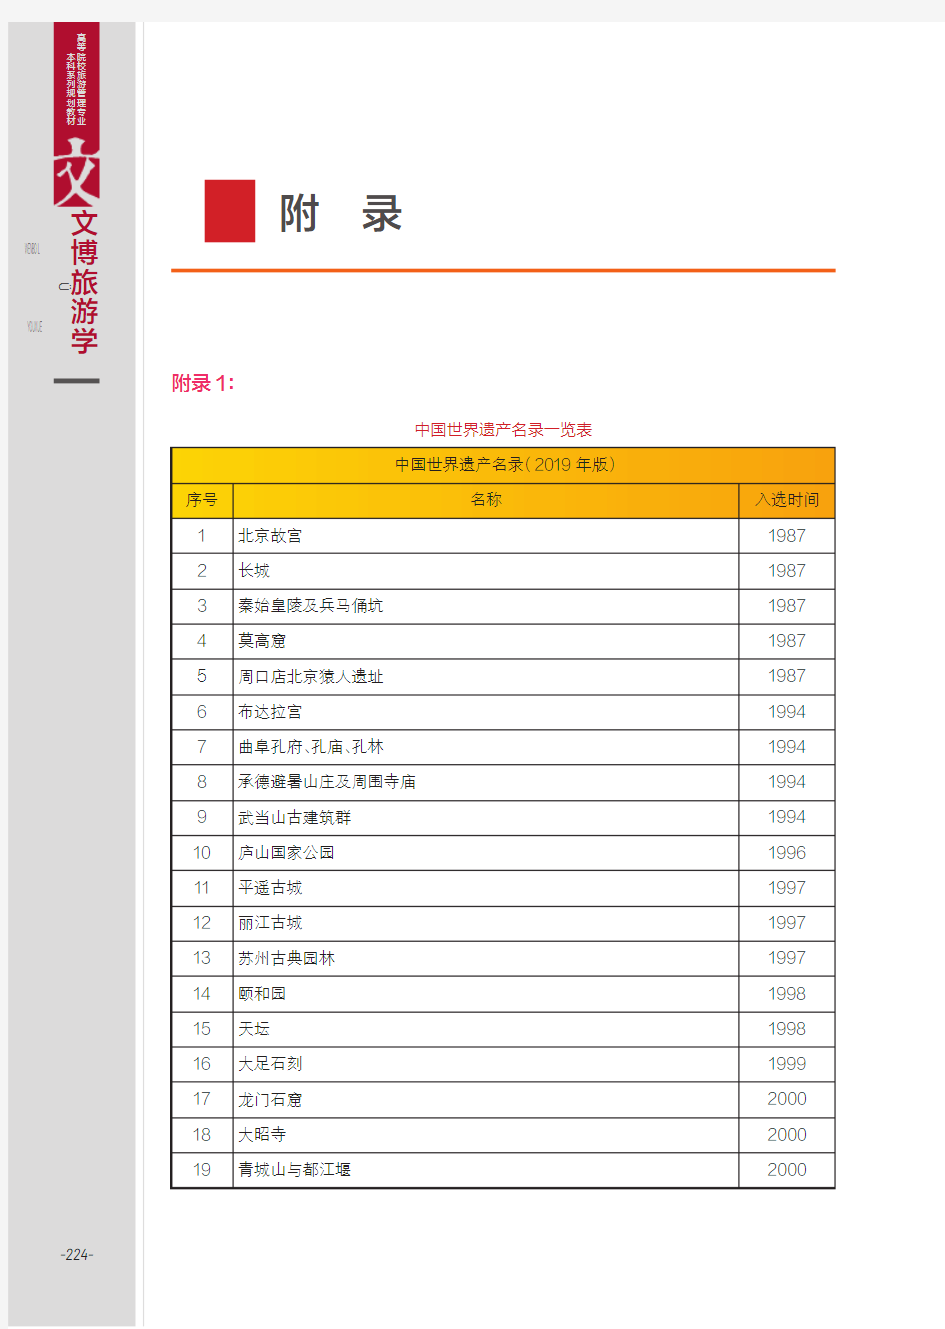 中国世界遗产名录一览表